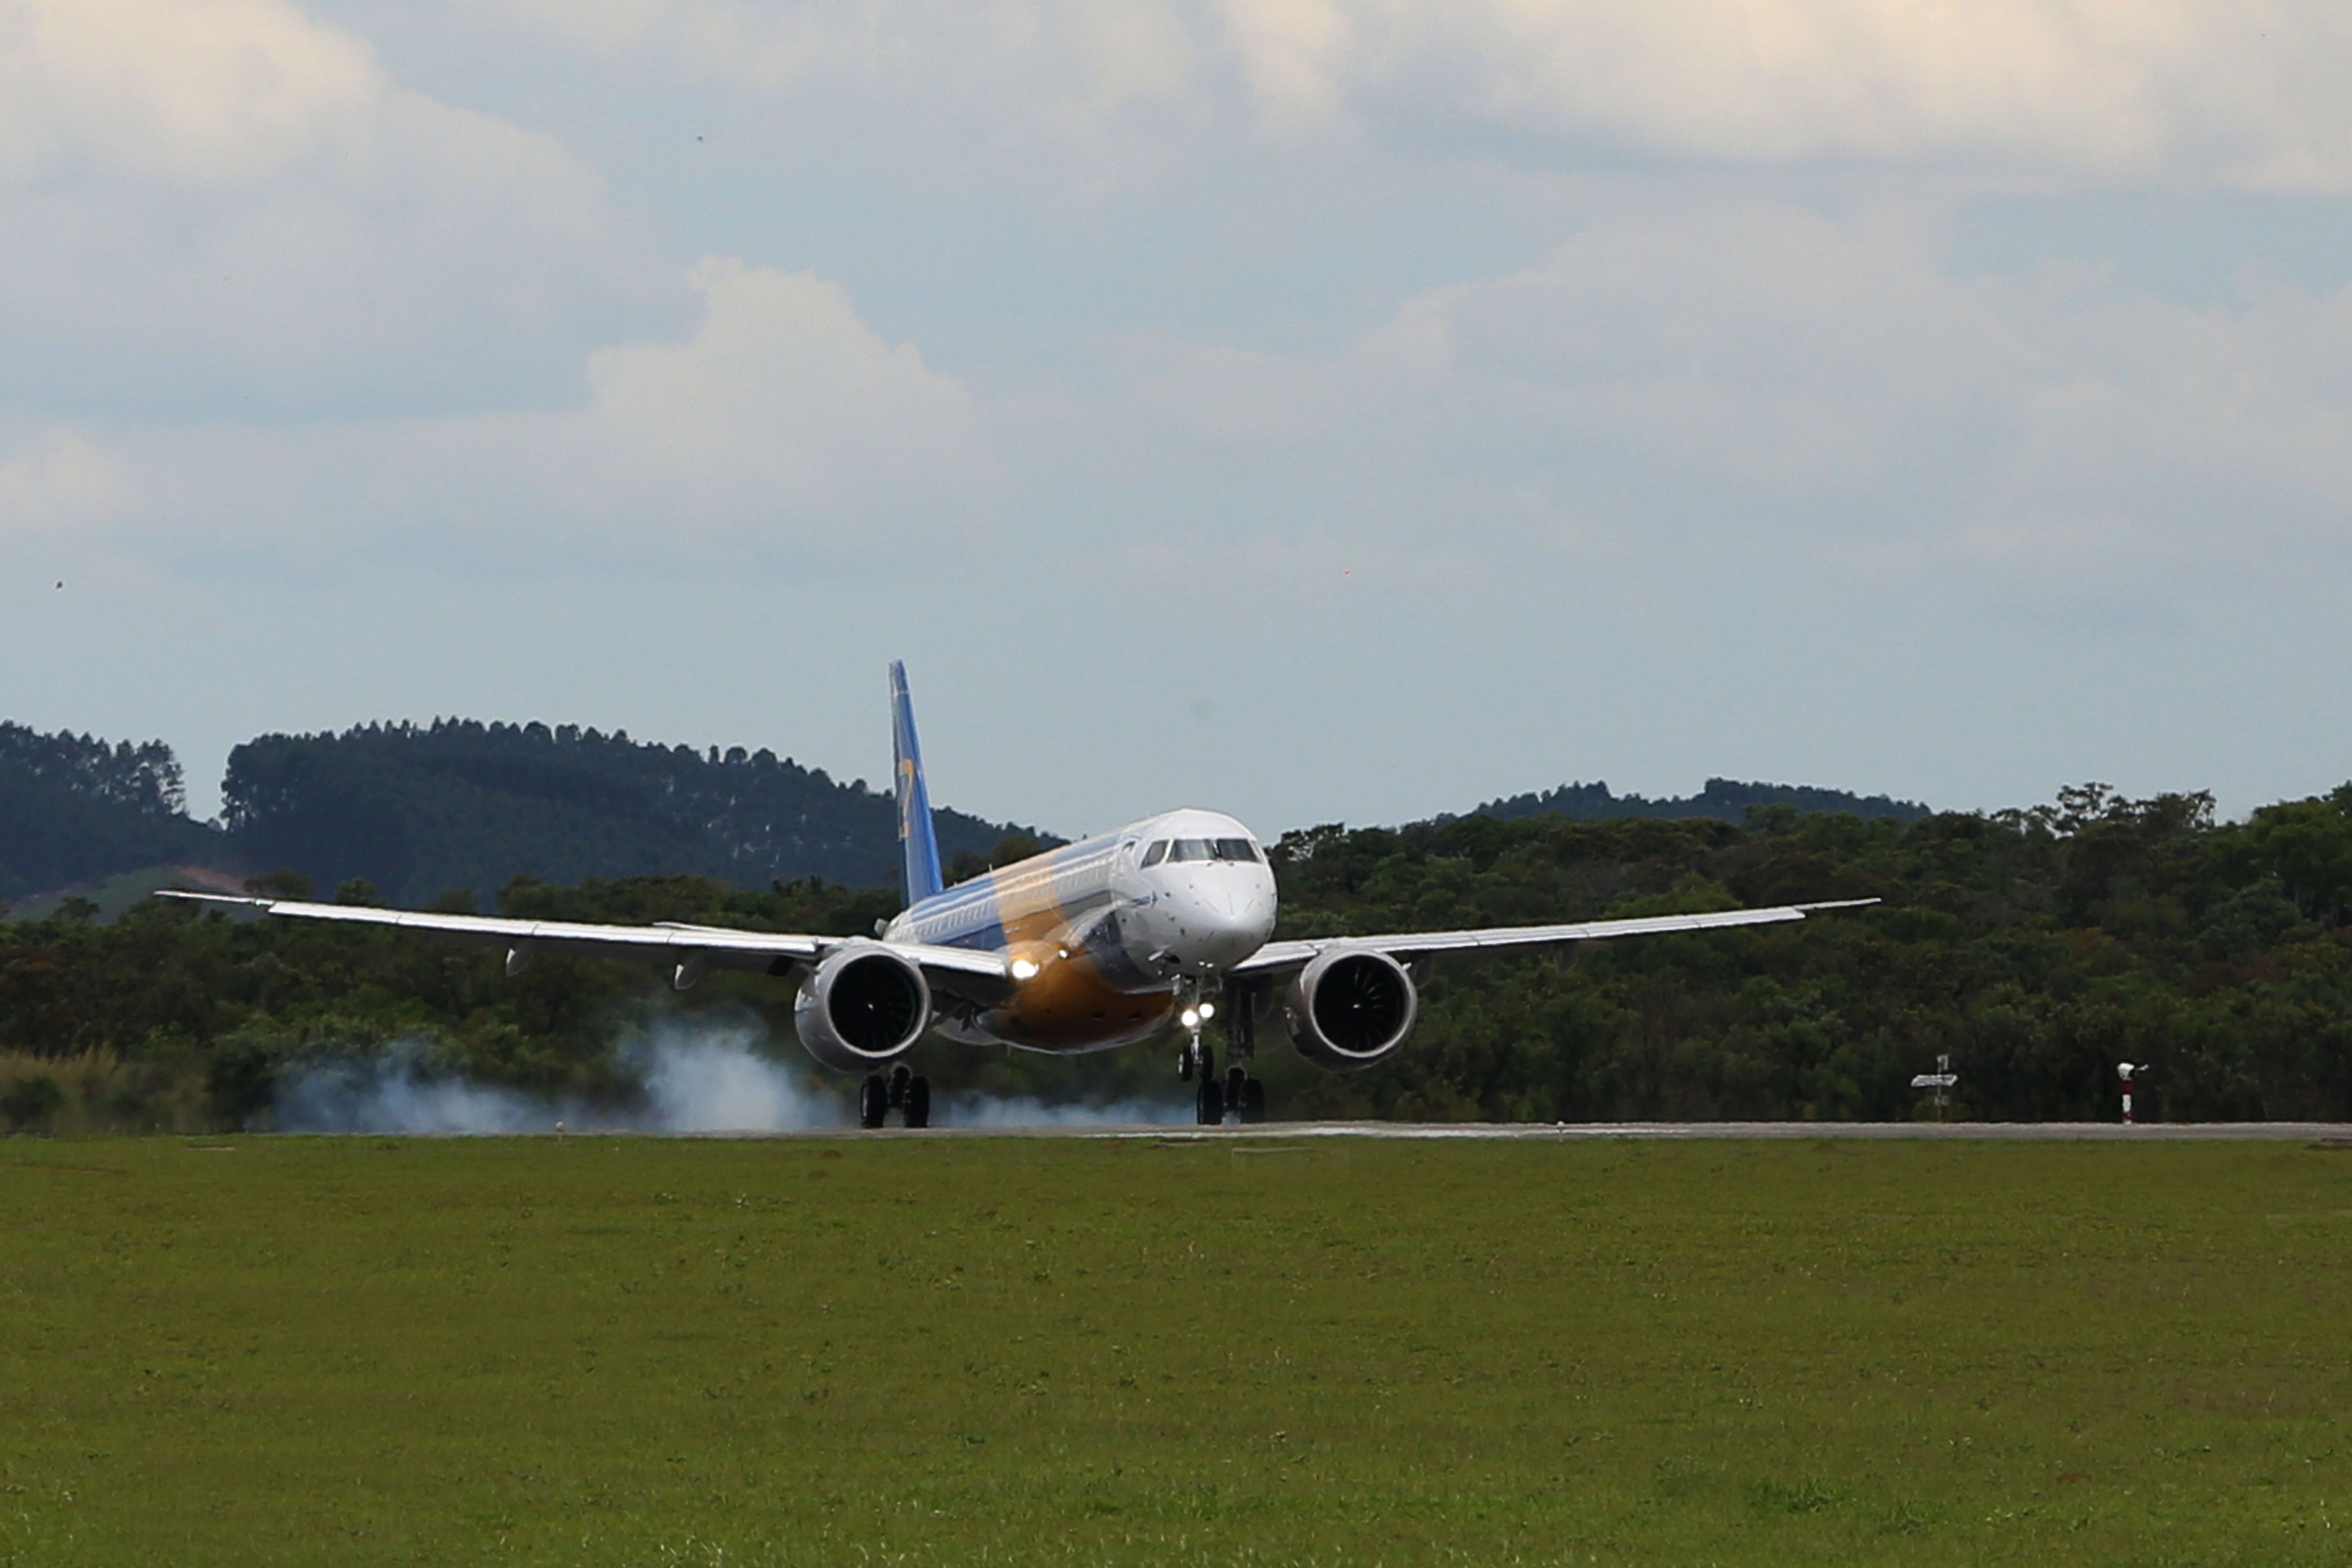 An Embraer E195-E2 as it lands.